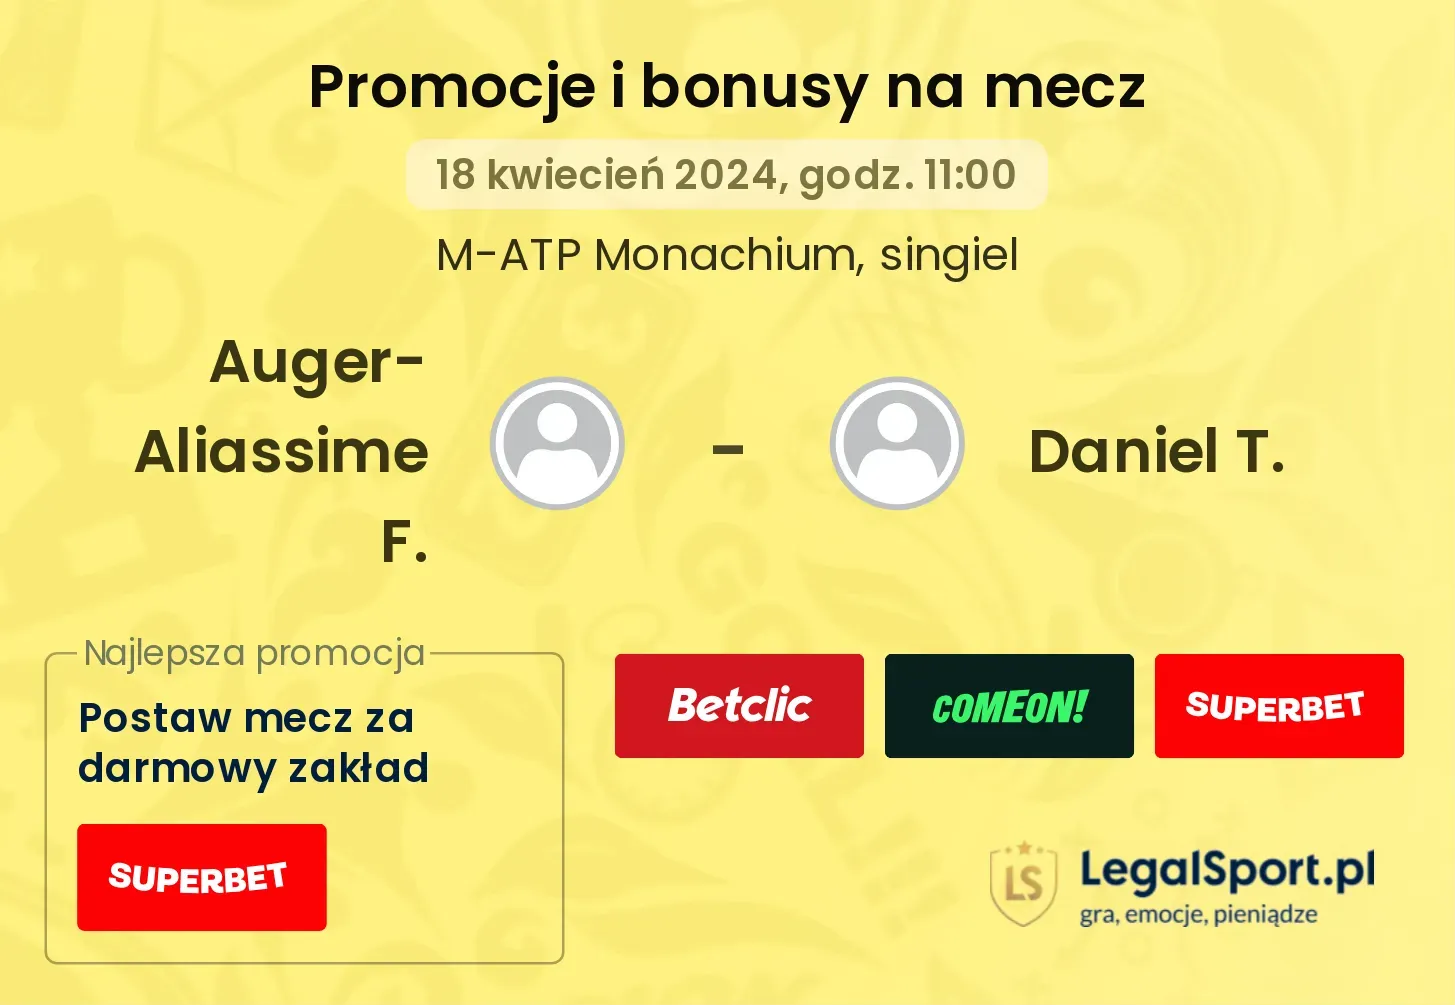 Auger-Aliassime F. - Daniel T. promocje bonusy na mecz